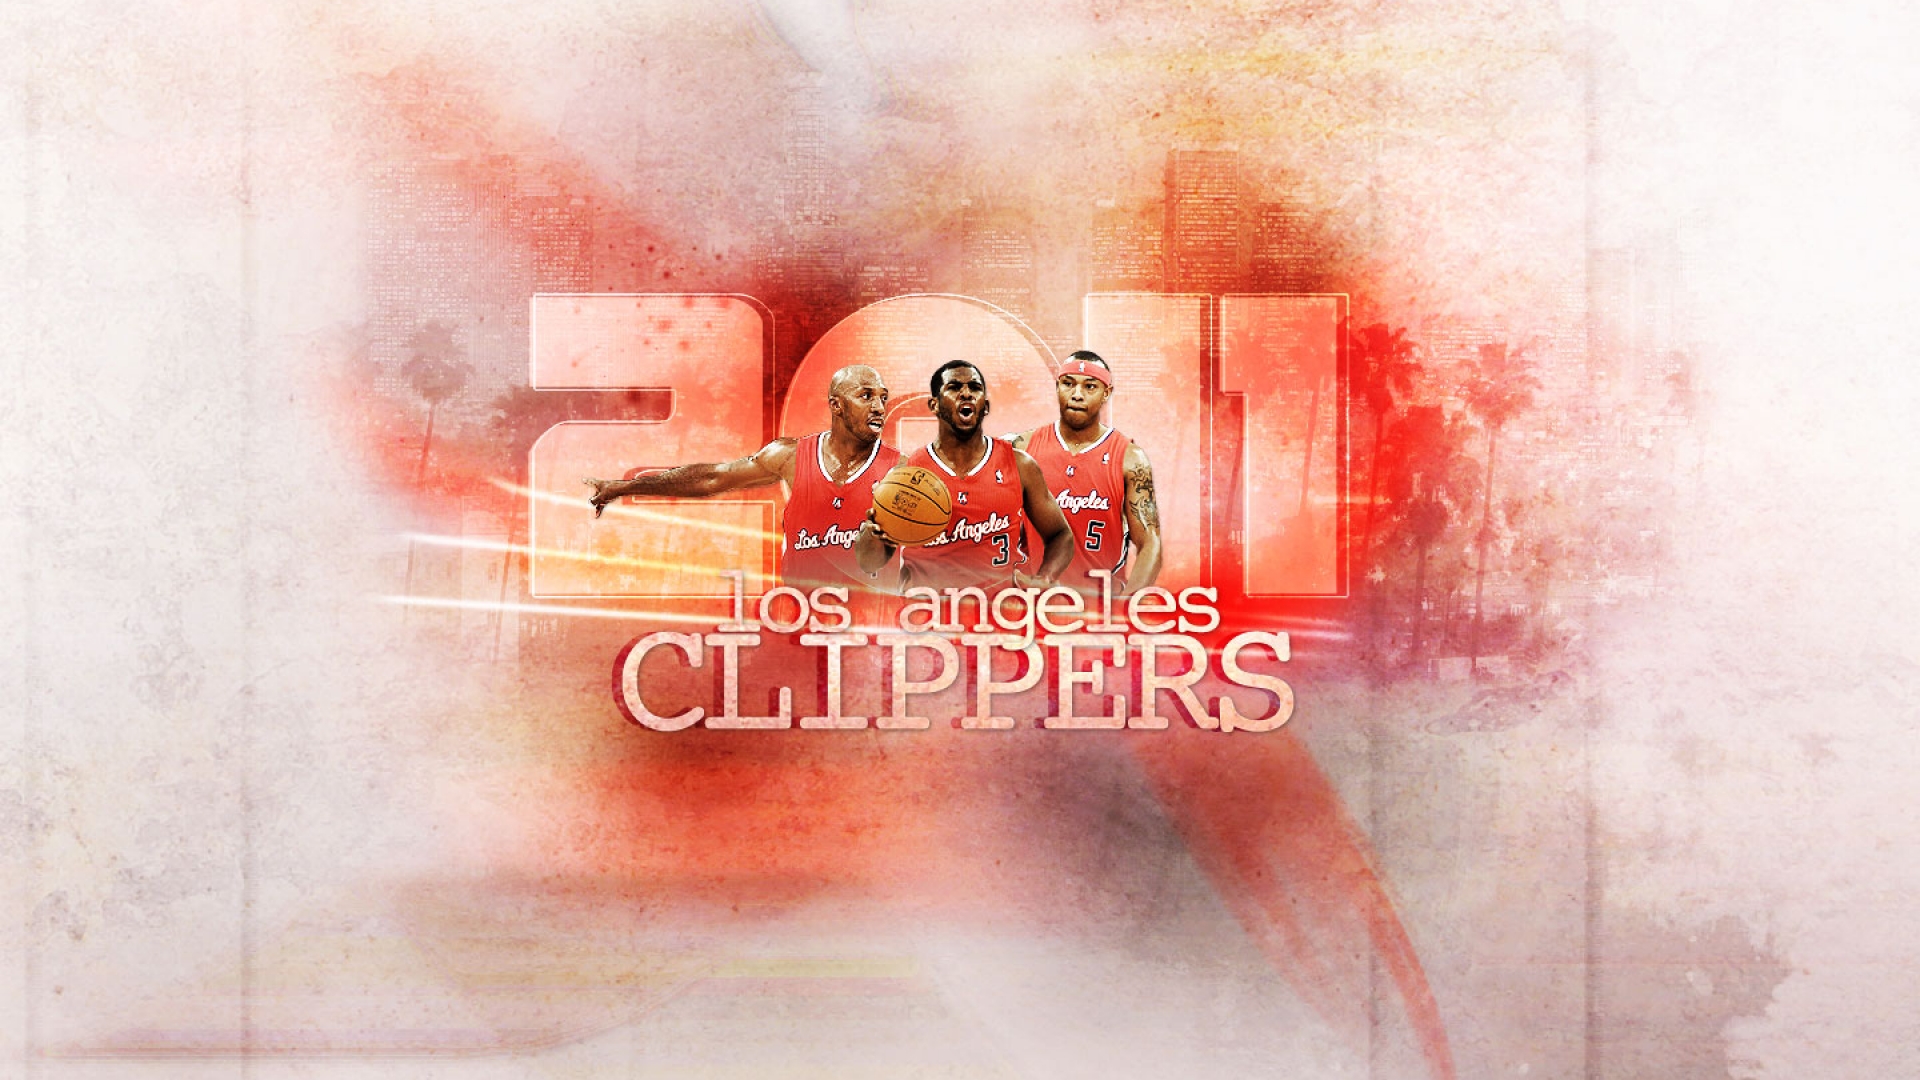 La Clippers Wallpaper HD